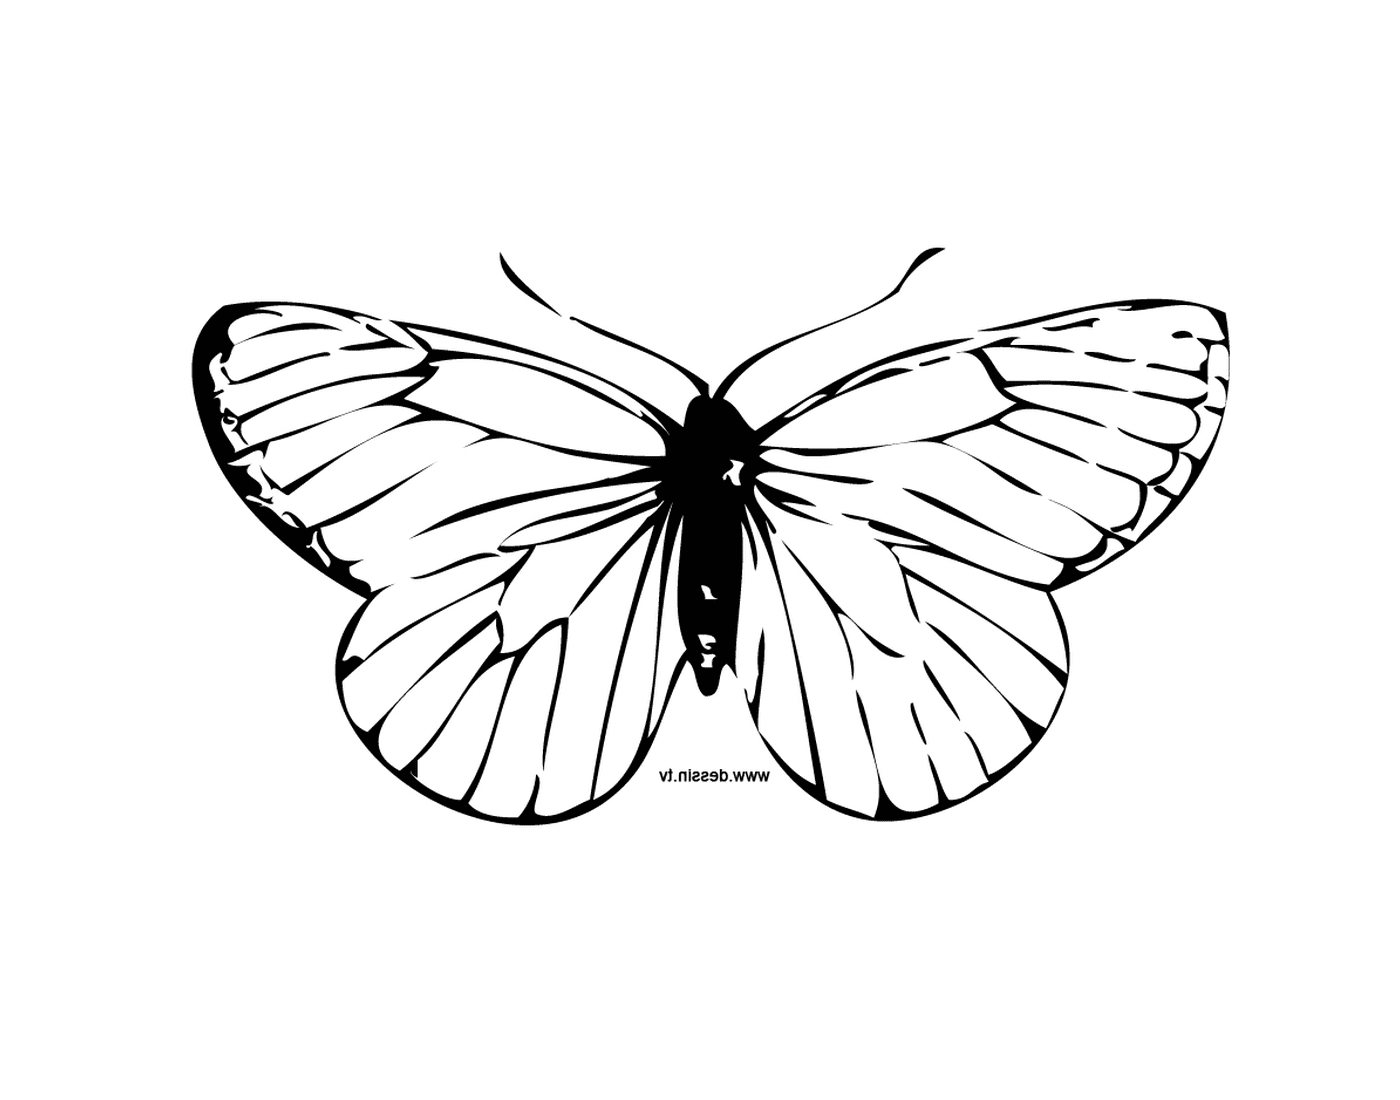  迷人的蝴蝶,有独有的动画图案 